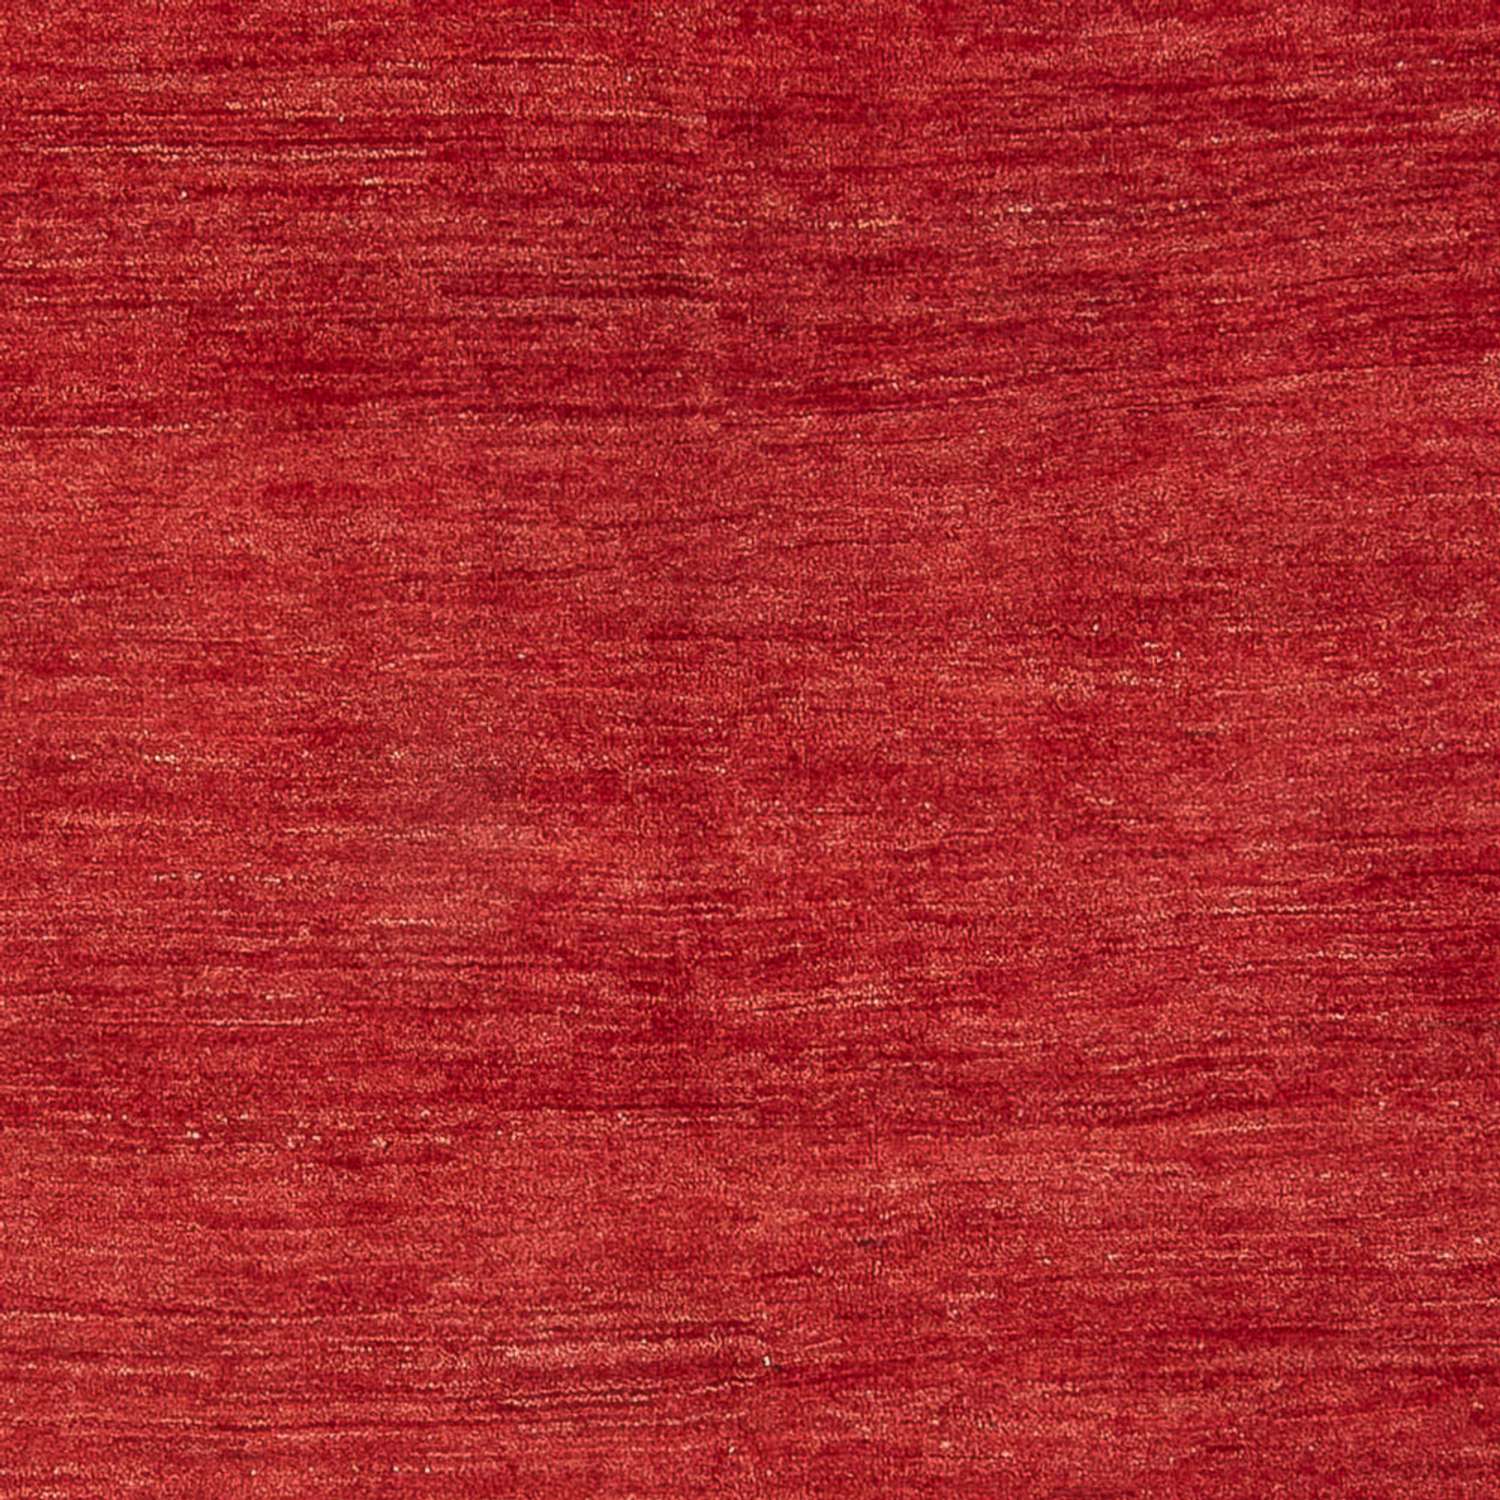 Gabbeh tapijt - Perzisch - 238 x 168 cm - rood